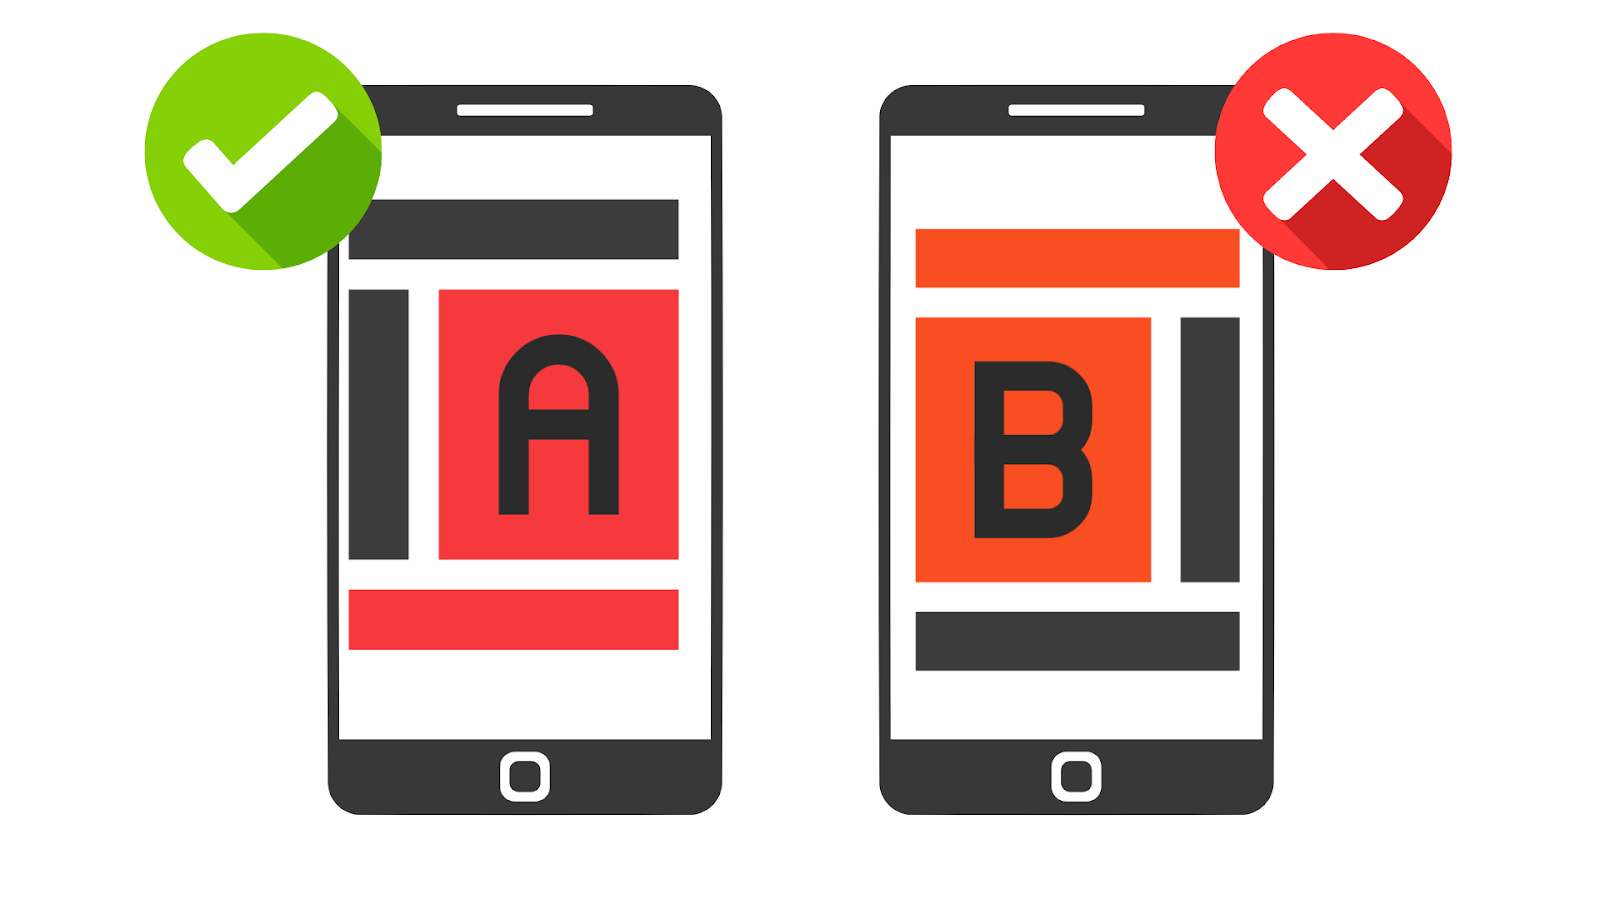 Dva telefona s oznakama A i B na ekranima. Jedan mobitel ima zelenu kvačicu, drugi crveni X.